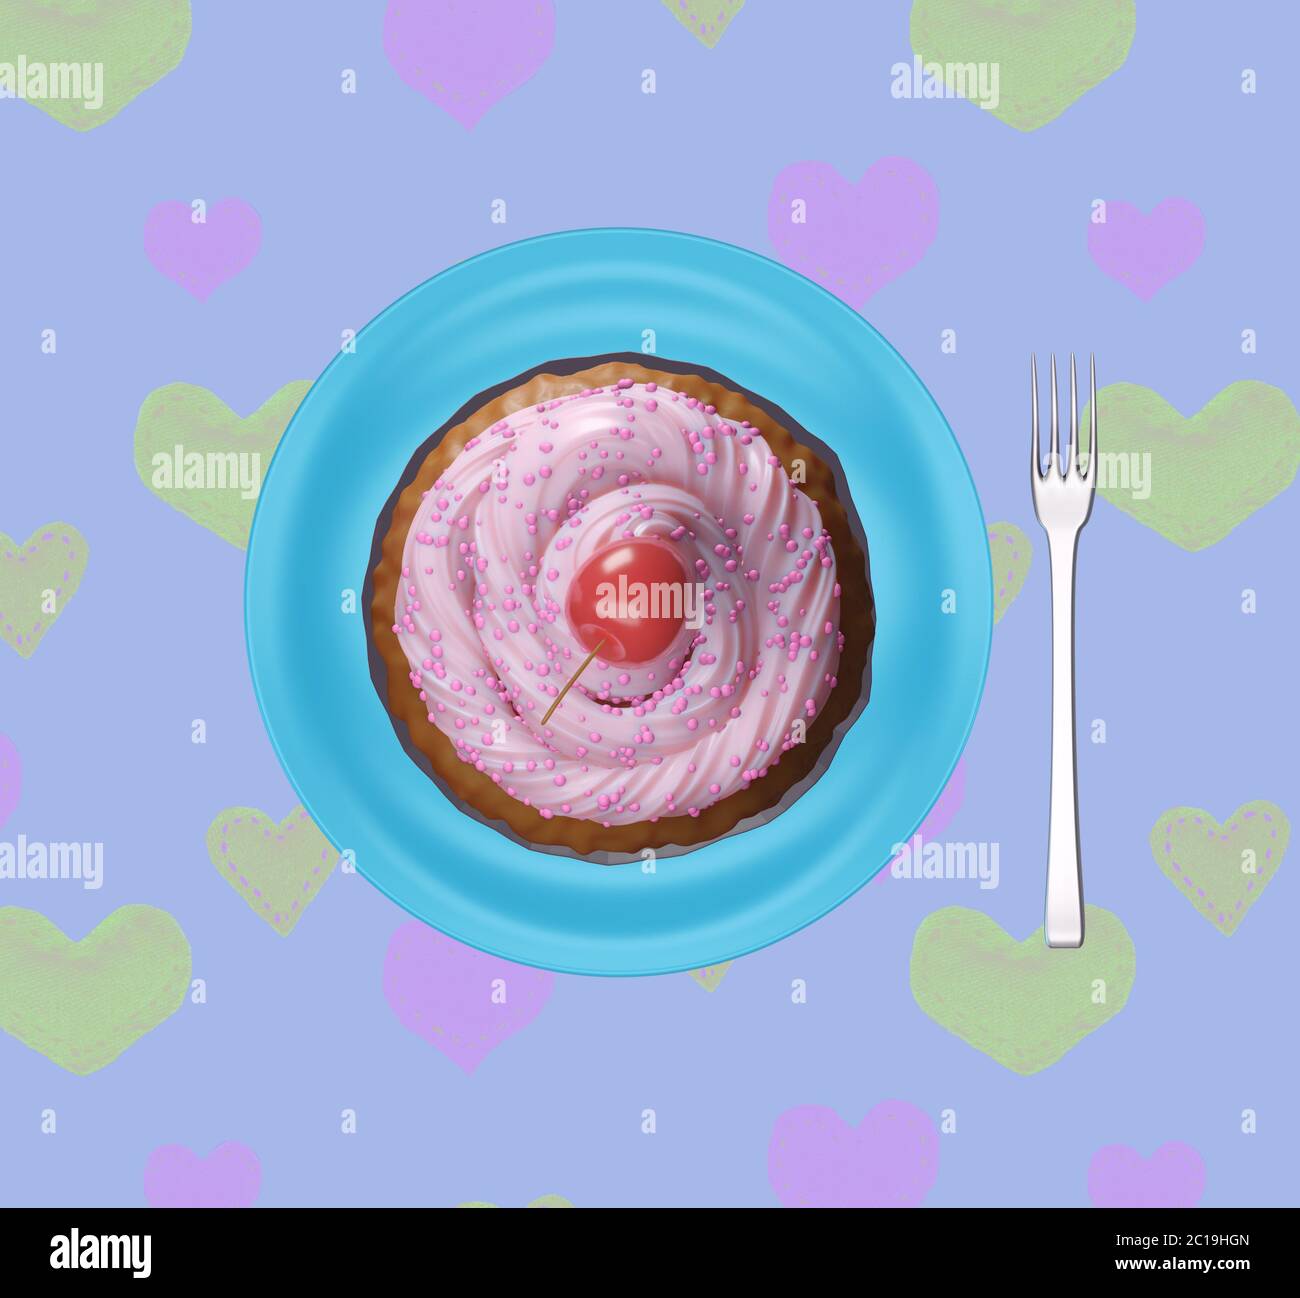 Leckerer, leckerer Cupcake mit der rosa Tüte auf der Oberseite und Kirsche, bereit für Kinderparty Essen, Muttertag Feier. Cupcake auf einem Teller, Draufsicht. 3d r Stockfoto